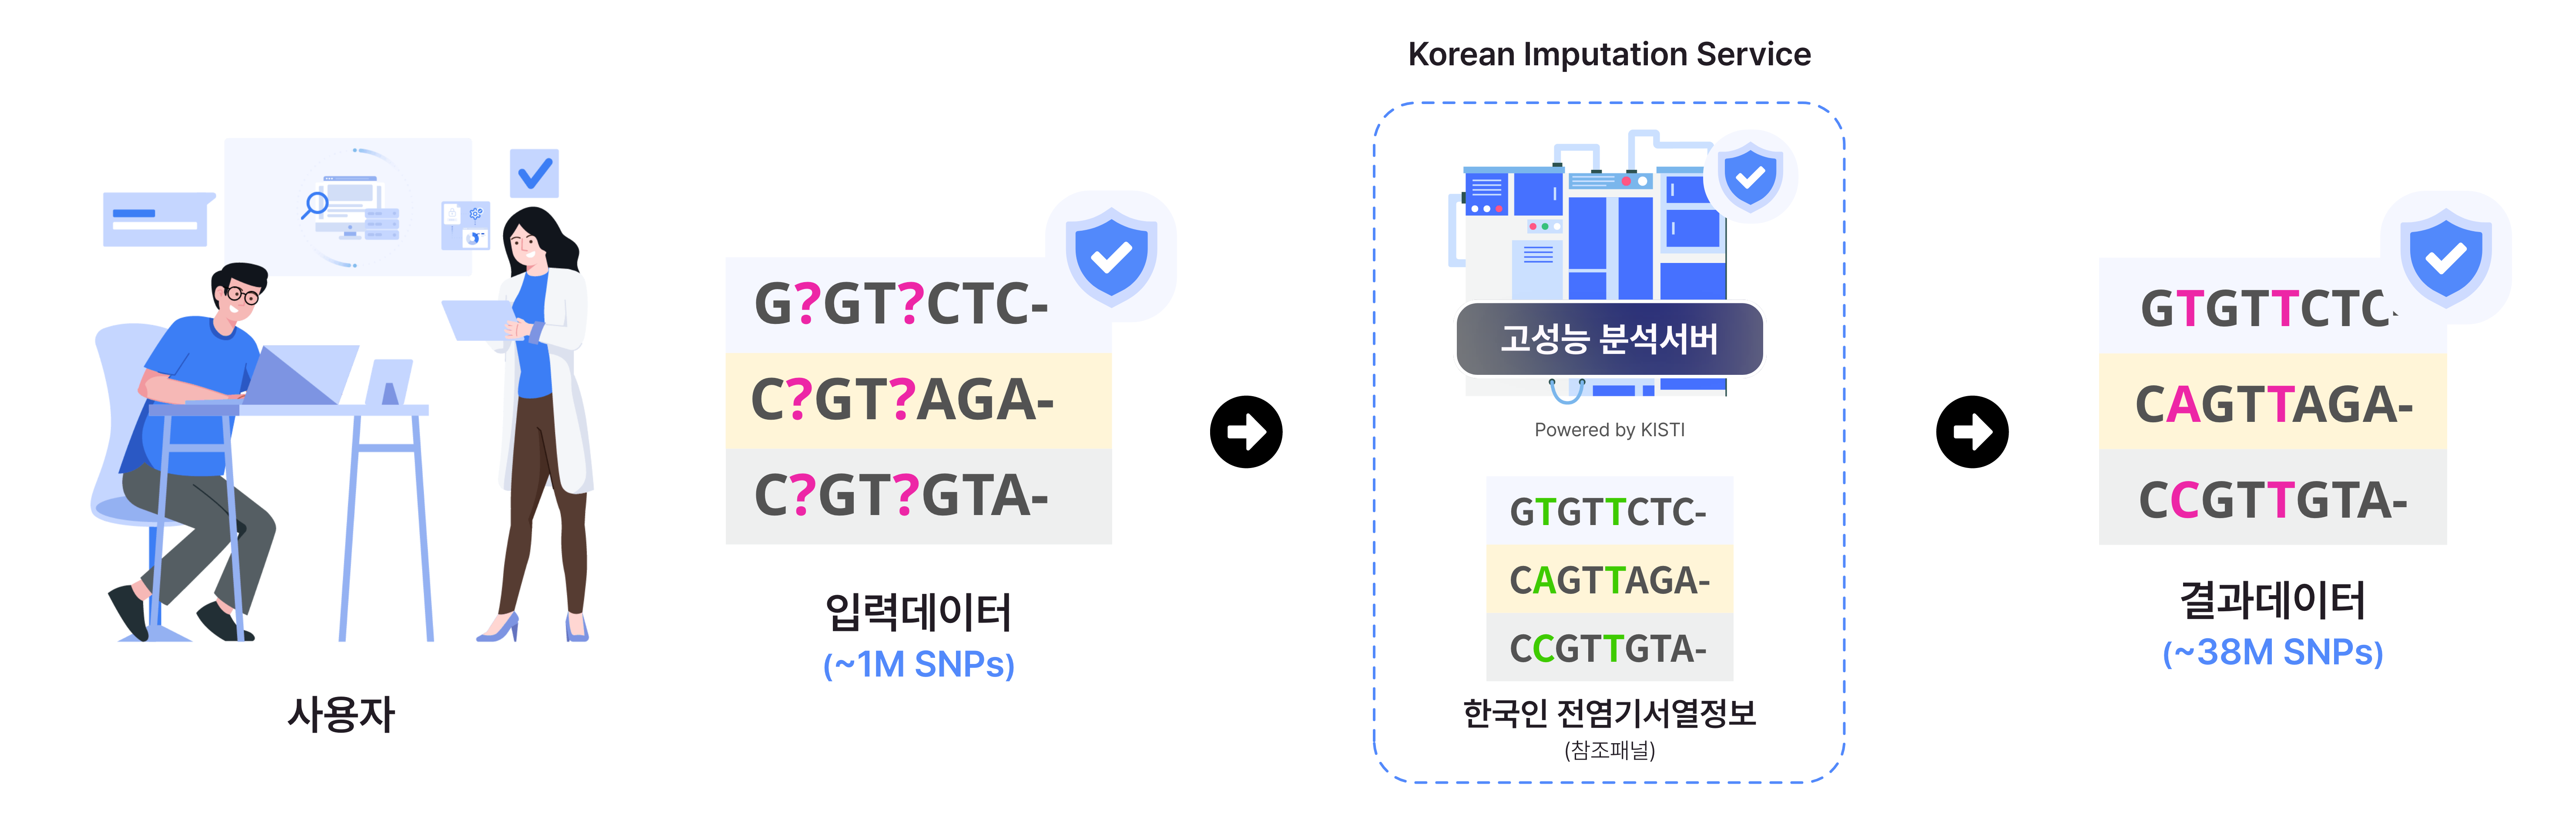 한국인 임퓨테이션 서비스 흐름도. 사용자가 유전변이 VCF 데이터를 업로드한 뒤, 분석옵션을 선택하고 잡을 서버에 보내면 한국인 임퓨테이션 패널로 유전변이를 확장하여 사용자에게 분석결과를 다운로드할 수 있게 하는 서비스